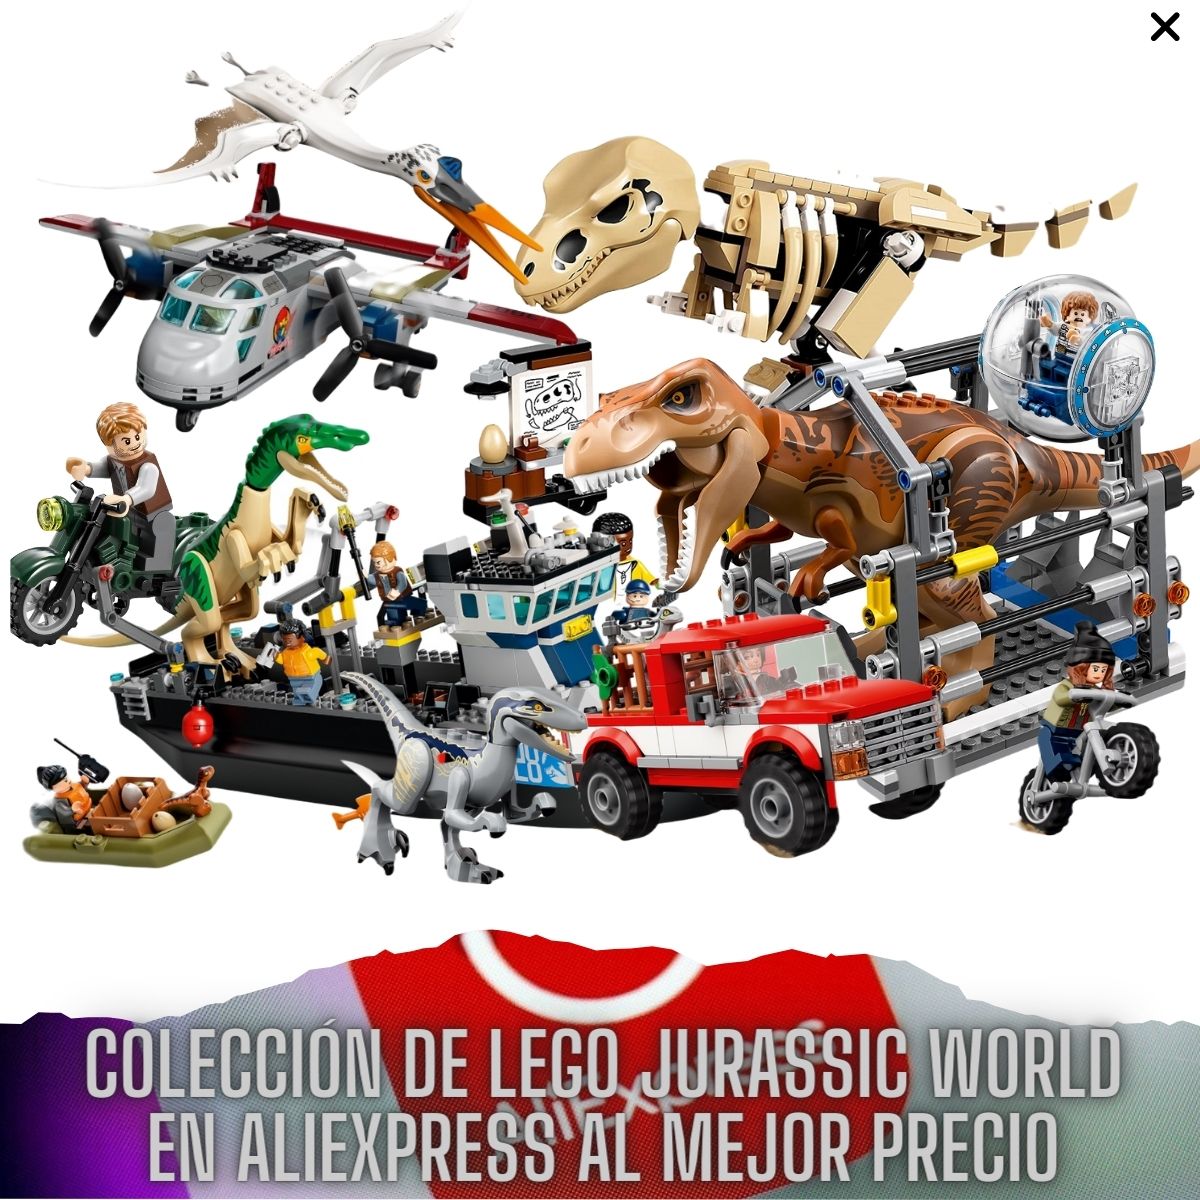 LEGO Jurassic World en aliexpress